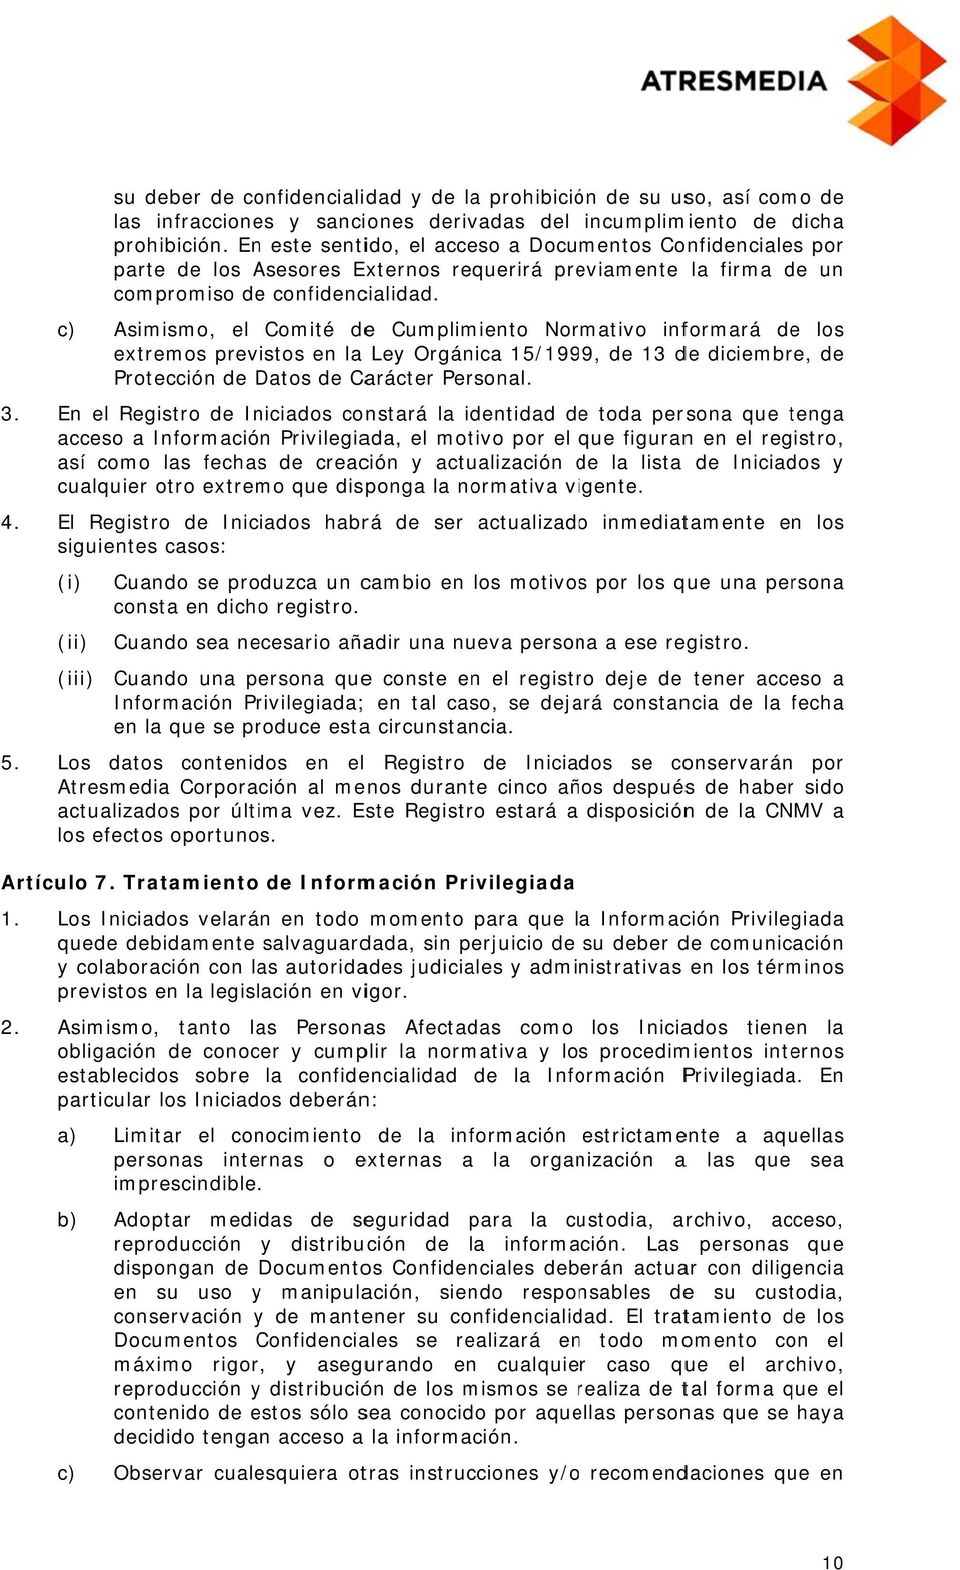 c) Asimismo, el Comité dee Cumplimiento Normativo informará de los extremos previstos en la Ley Orgánica 15/1999, de 13 de diciembre, de Protección de Datos de Carácter Personal.